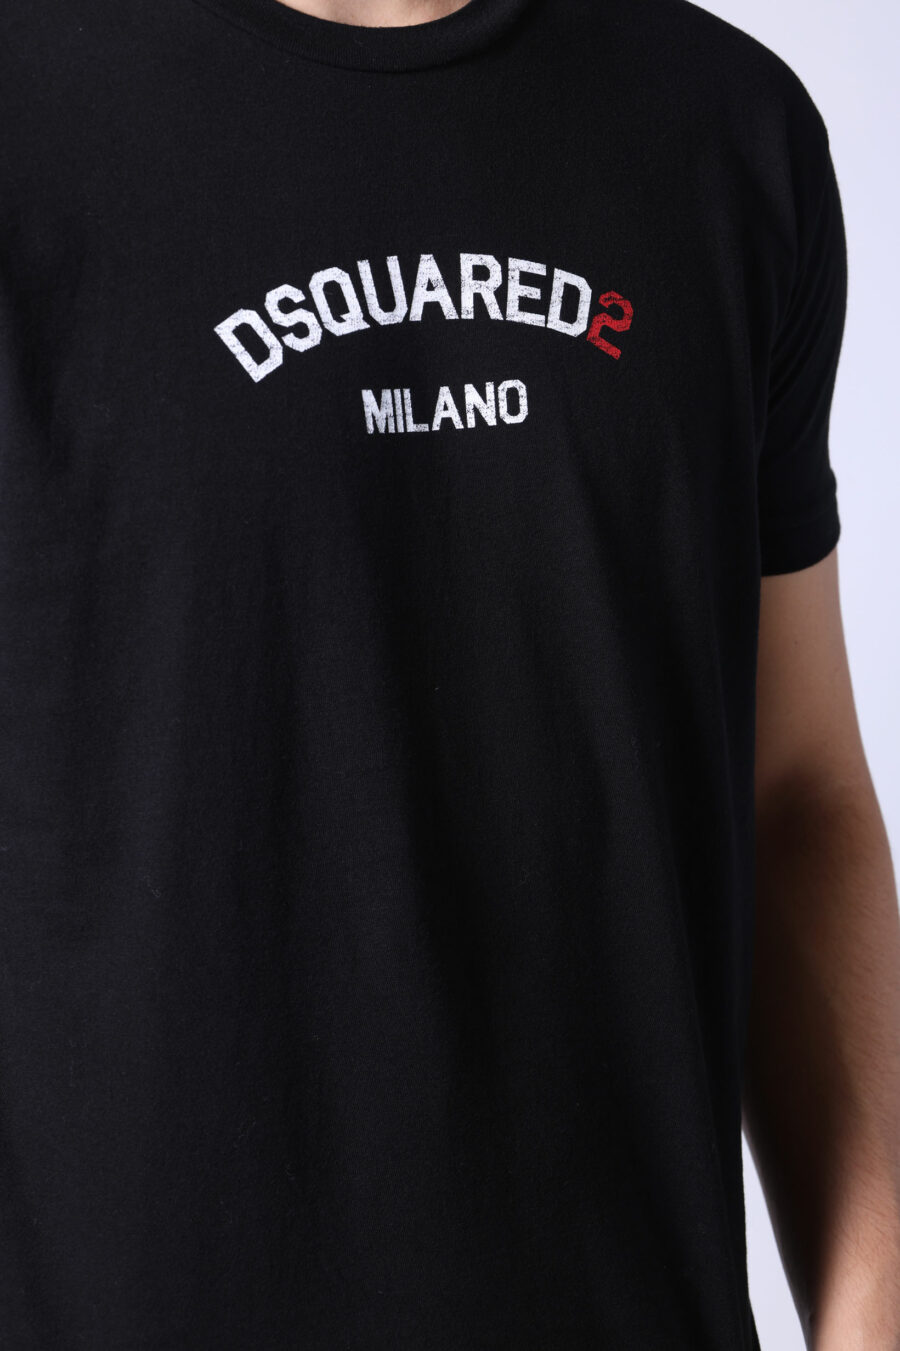 T-shirt noir avec minilogue "dsquared2 milano" - Untitled Catalog 05473